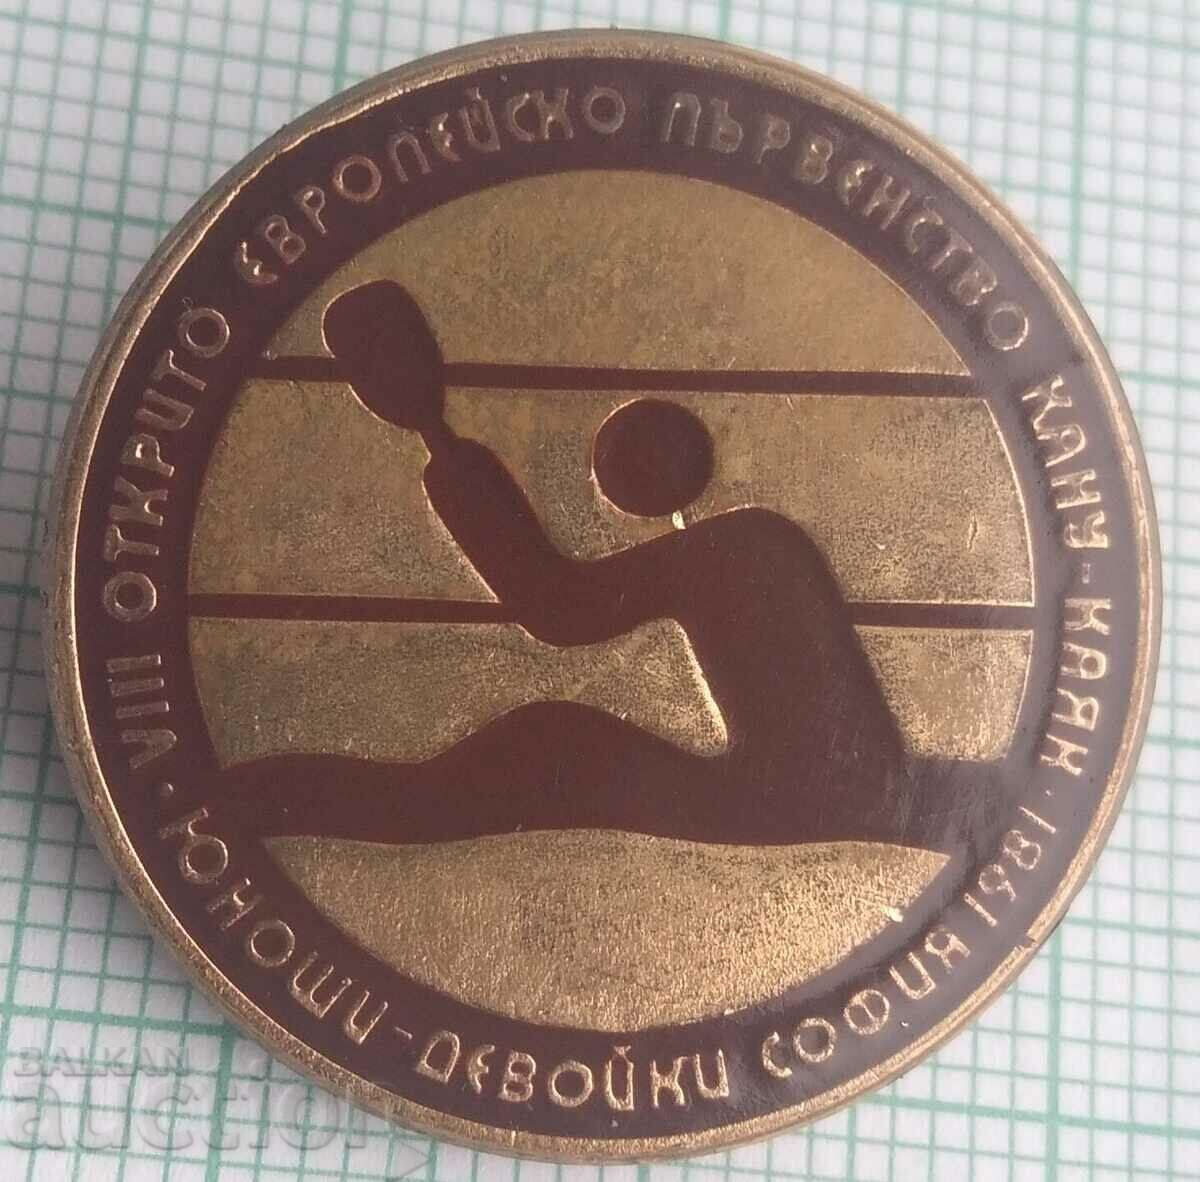 15023 Ευρωπαϊκό Πρωτάθλημα Κανόε-Καγιάκ Σόφια 1981